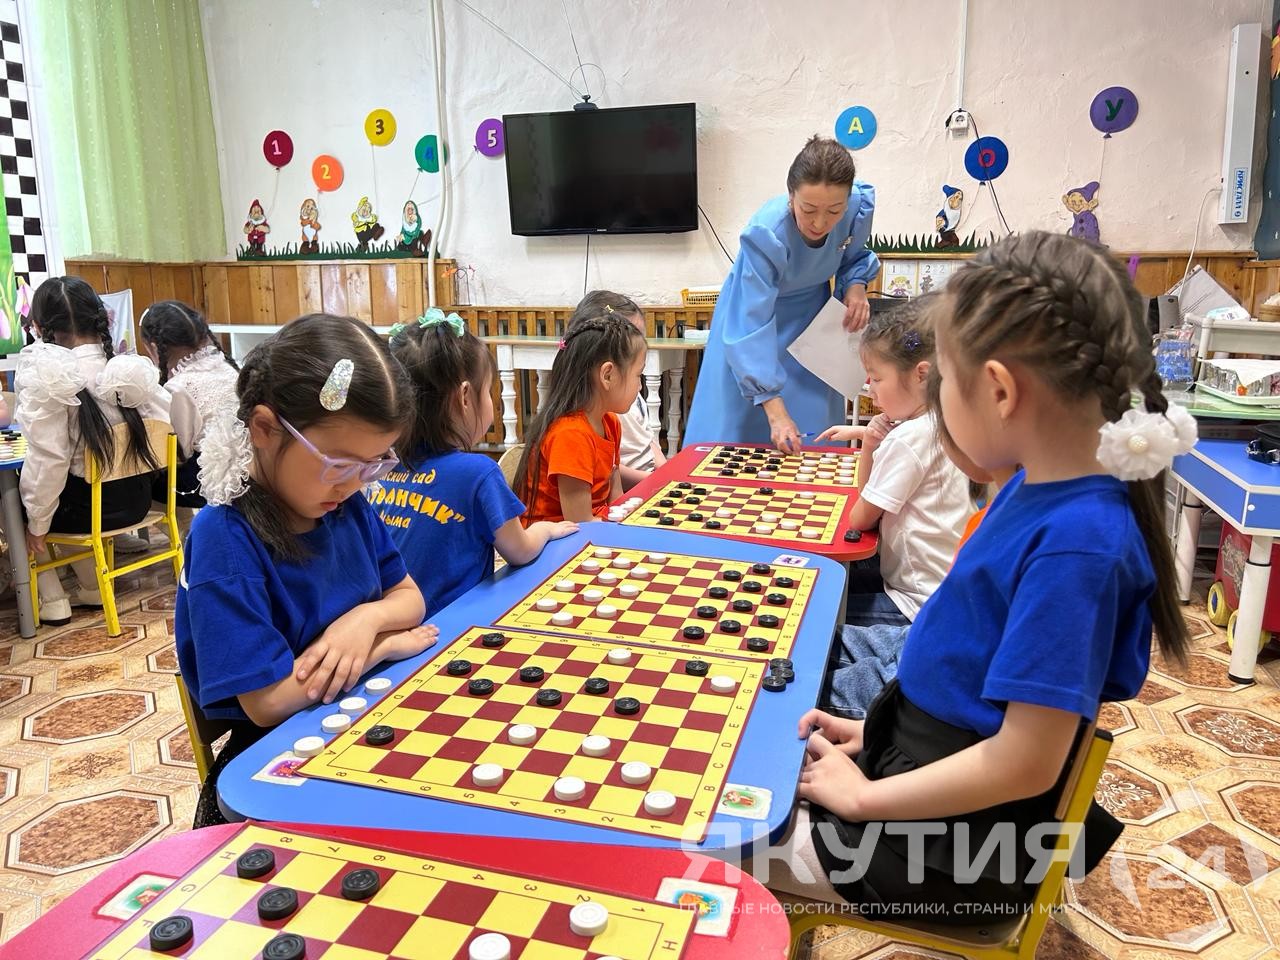 Первенство по русским шашкам для детей провели в Бердигестяхе